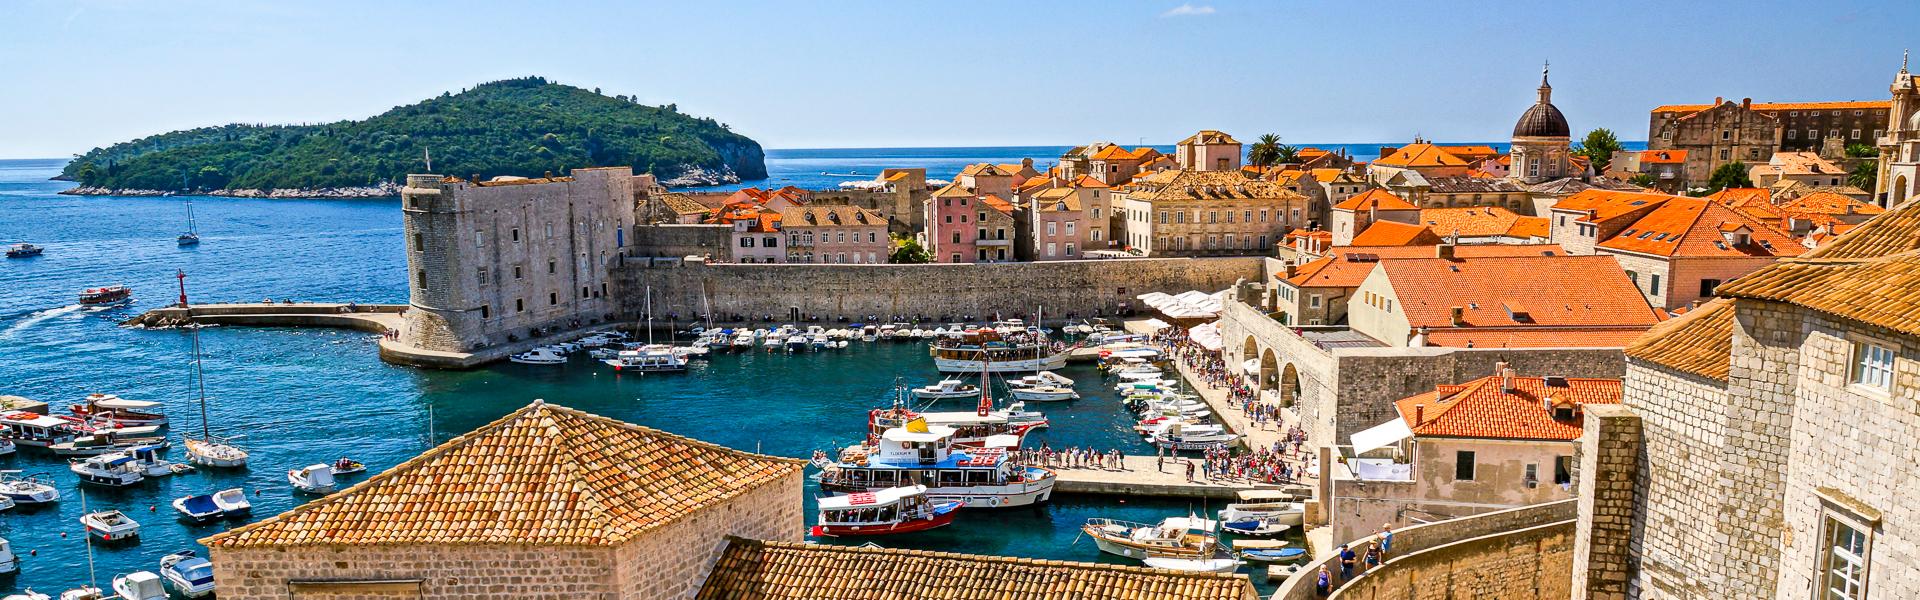 Auf der Stadtmauer von Dubrovnik |  clariston, Pixabay / Chamleon